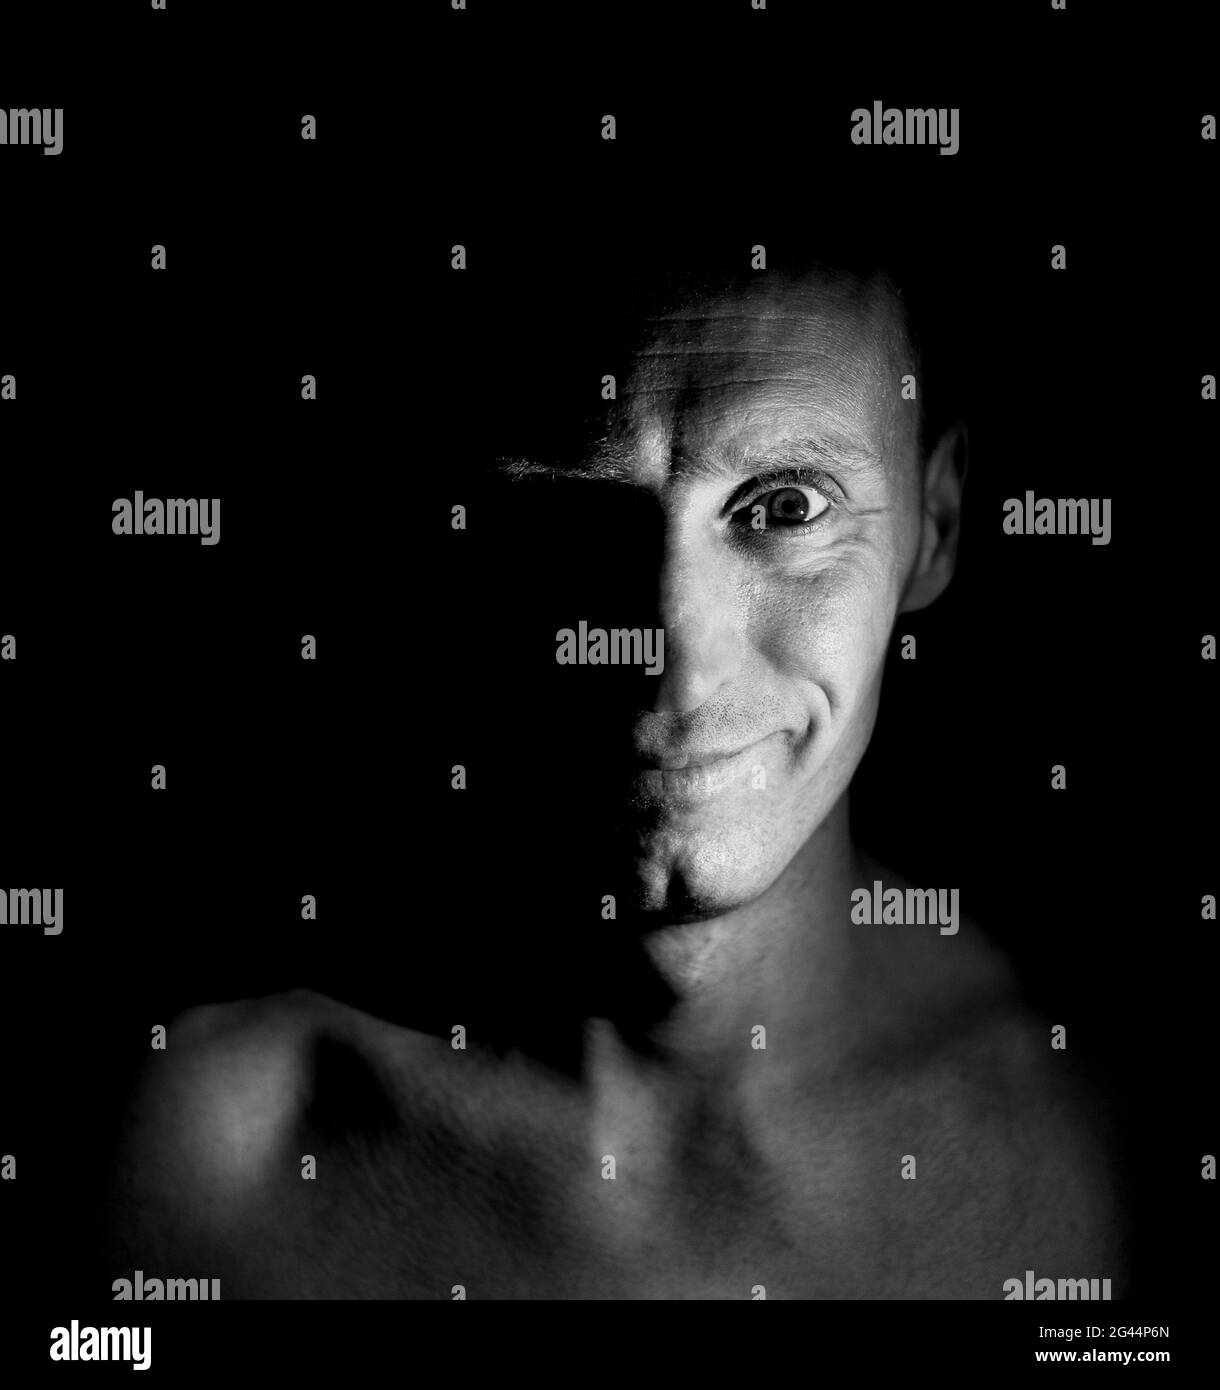 Stilvolle Portrait von Erwachsenen kaukasischen Mann mit freundlichem Lächeln. Das Gesicht des Mannes beleuchtet die Hälfte. Schwarzweiß gedreht, niedrig - Beleuchtung. Stockfoto